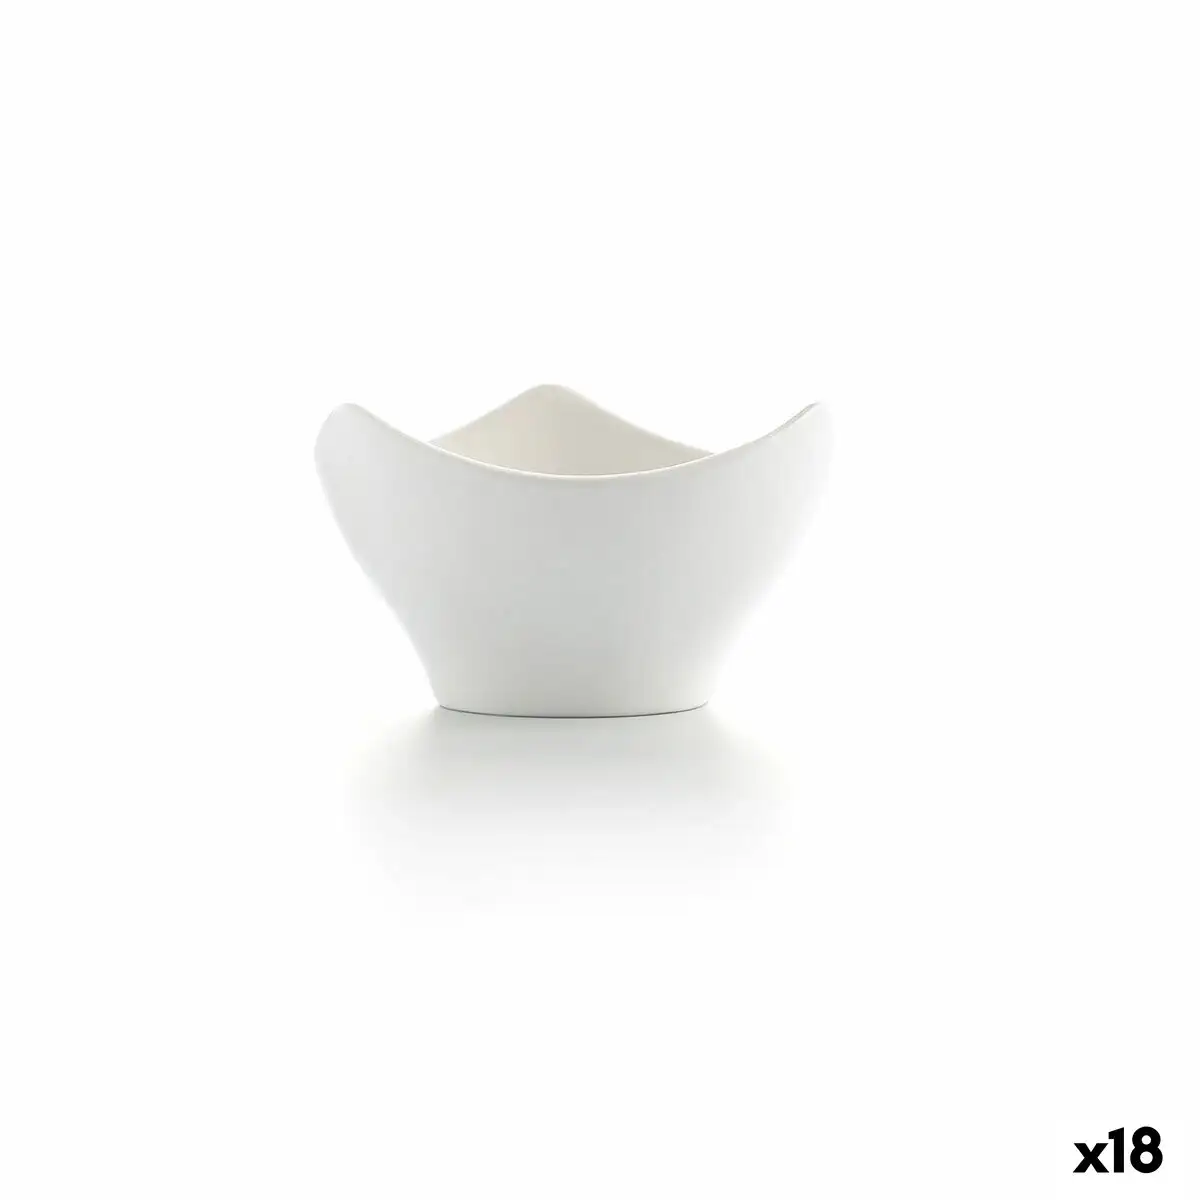 Bol ariane alaska mini 9 x 5 6 x 4 3 cm ceramique blanc 18 unites _2499. Bienvenue chez DIAYTAR SENEGAL - Où le Shopping Devient un Voyage. Explorez notre plateforme pour dénicher des produits uniques, racontant l'histoire et l'âme du Sénégal.